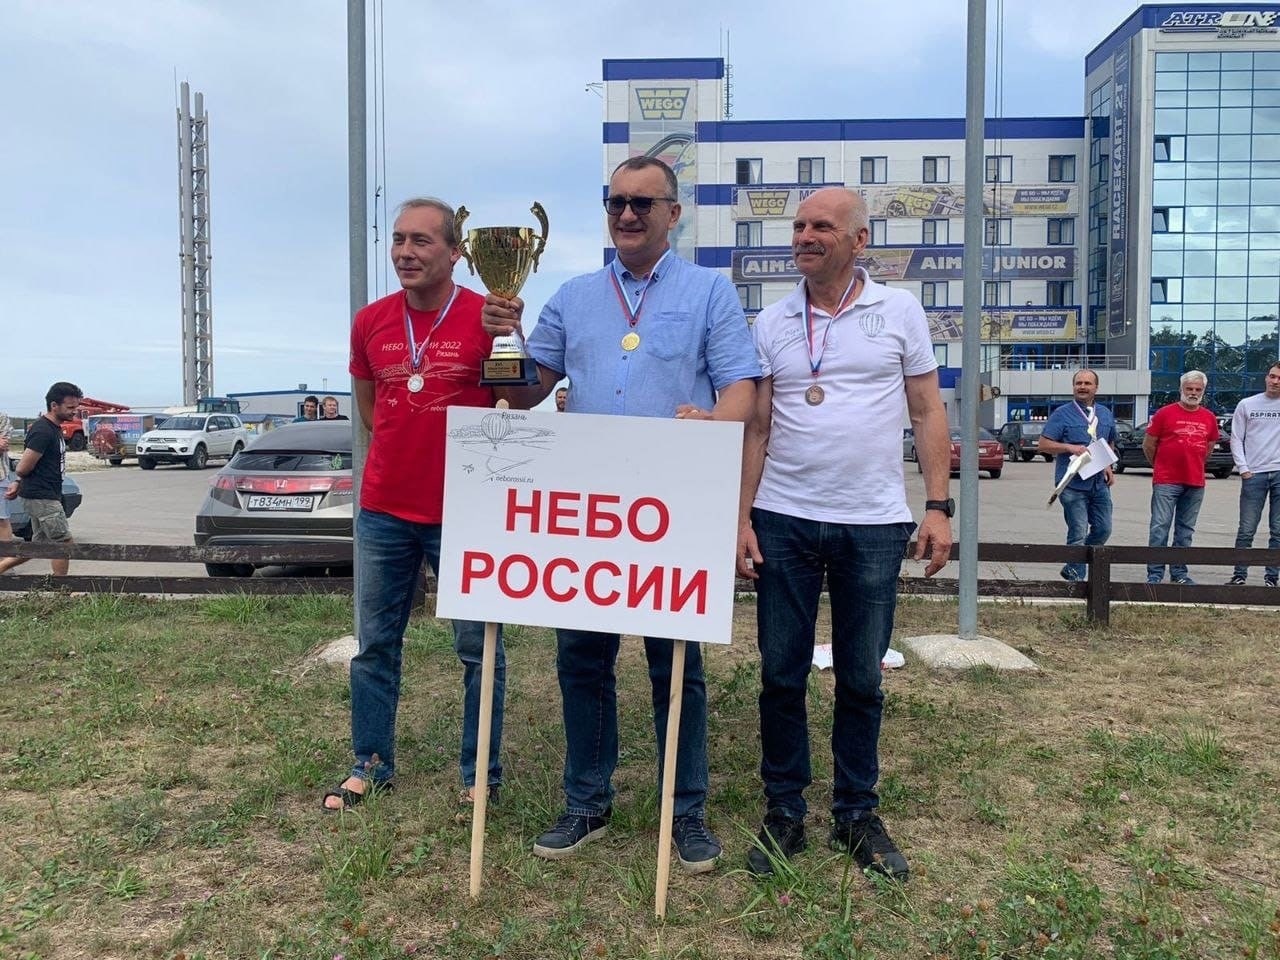 Туляк завоевал Кубок России по воздухоплавательному спорту